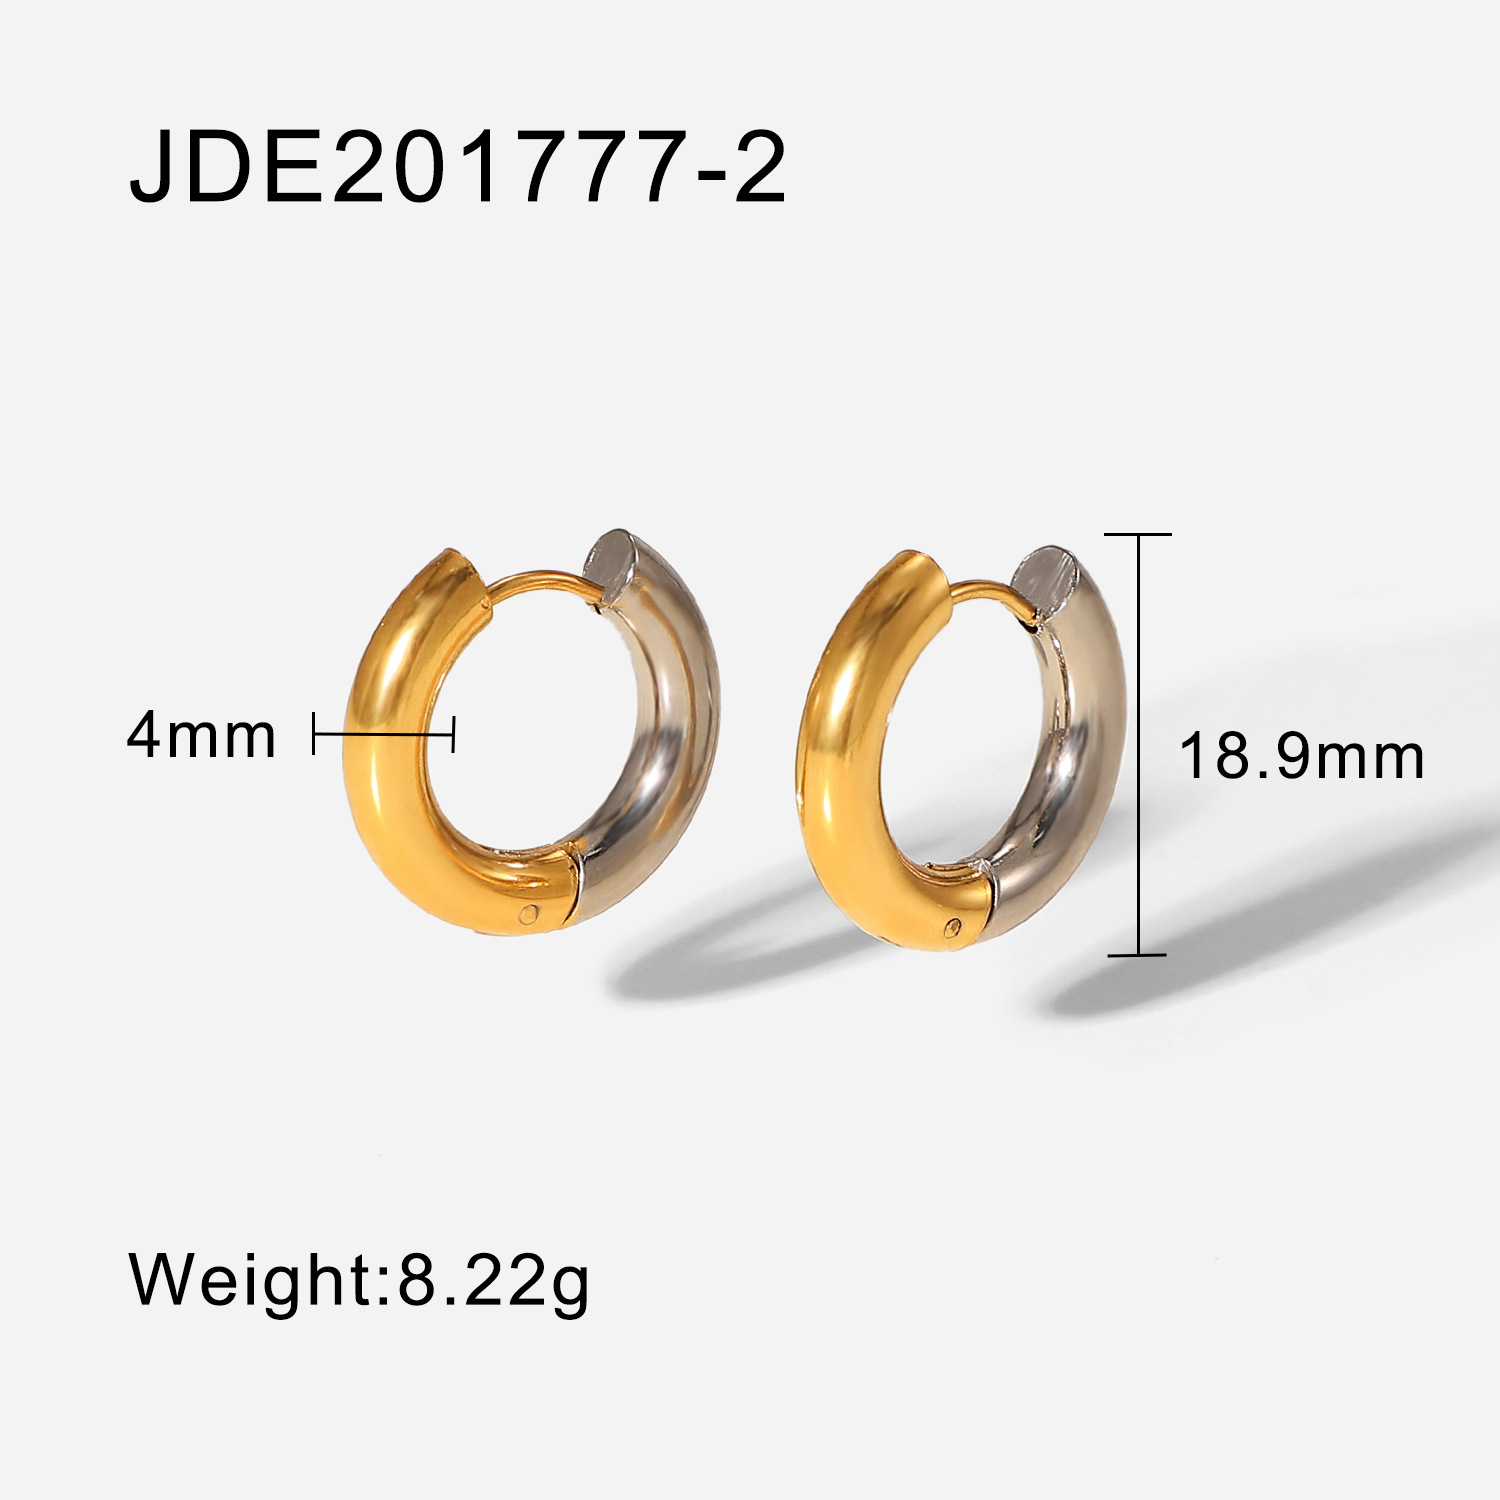 2:JDE201777-2